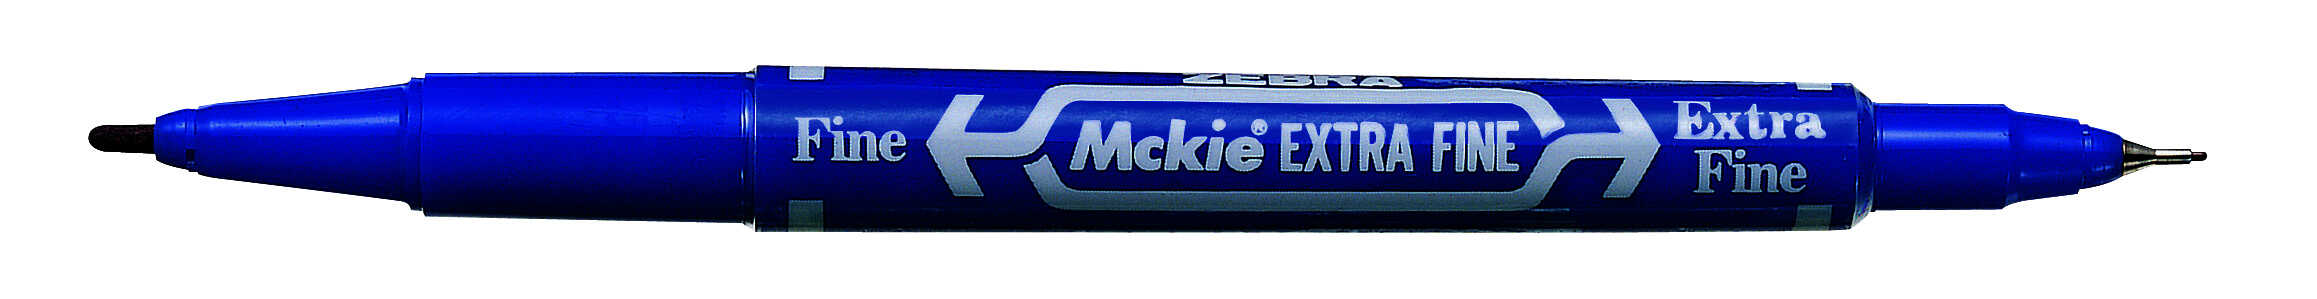 MCKIE EXTRA FINE permanent marker 1